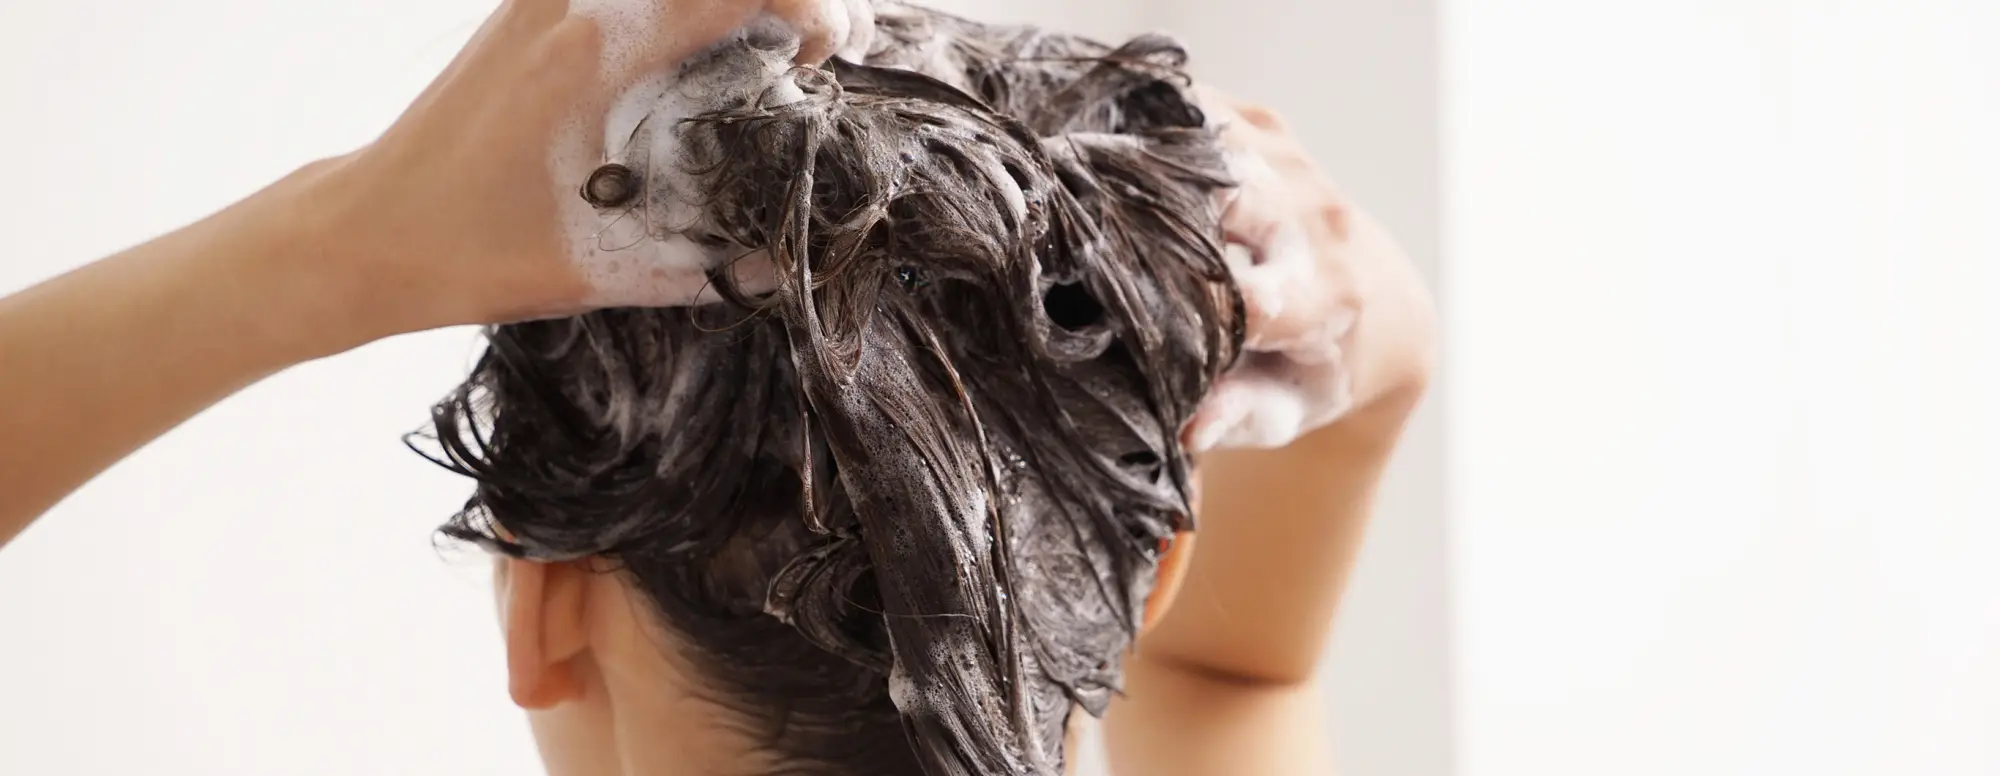 Mulher lavando o cabelo com produtos Pantene. É Importante mudar o shampoo 